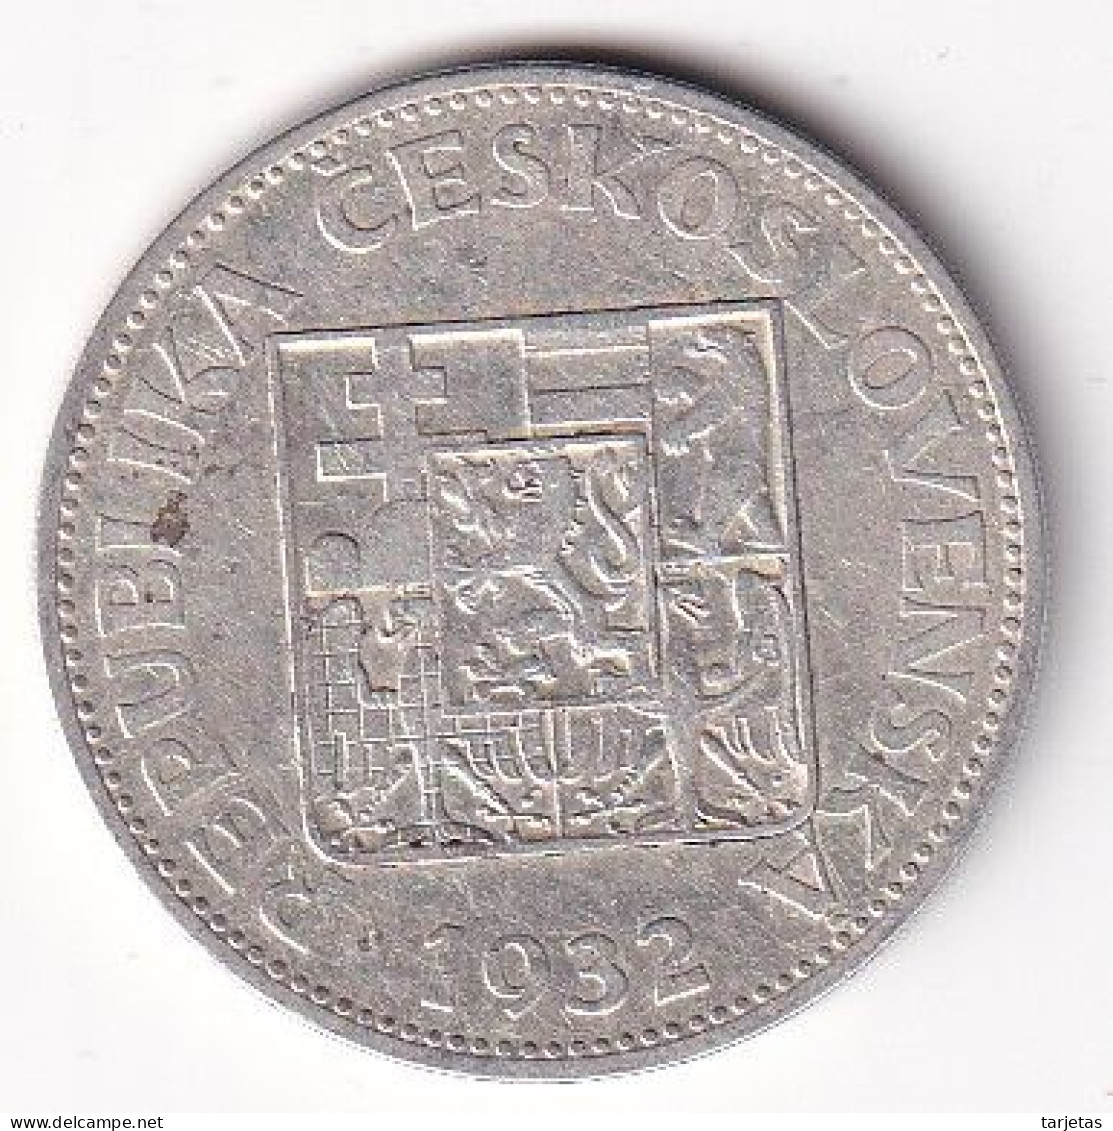 MONEDA DE PLATA DE CHECOSLOVAQUIA DE 10 KORUN DEL AÑO 1932 (COIN) SILVER-ARGENT - Tschechoslowakei